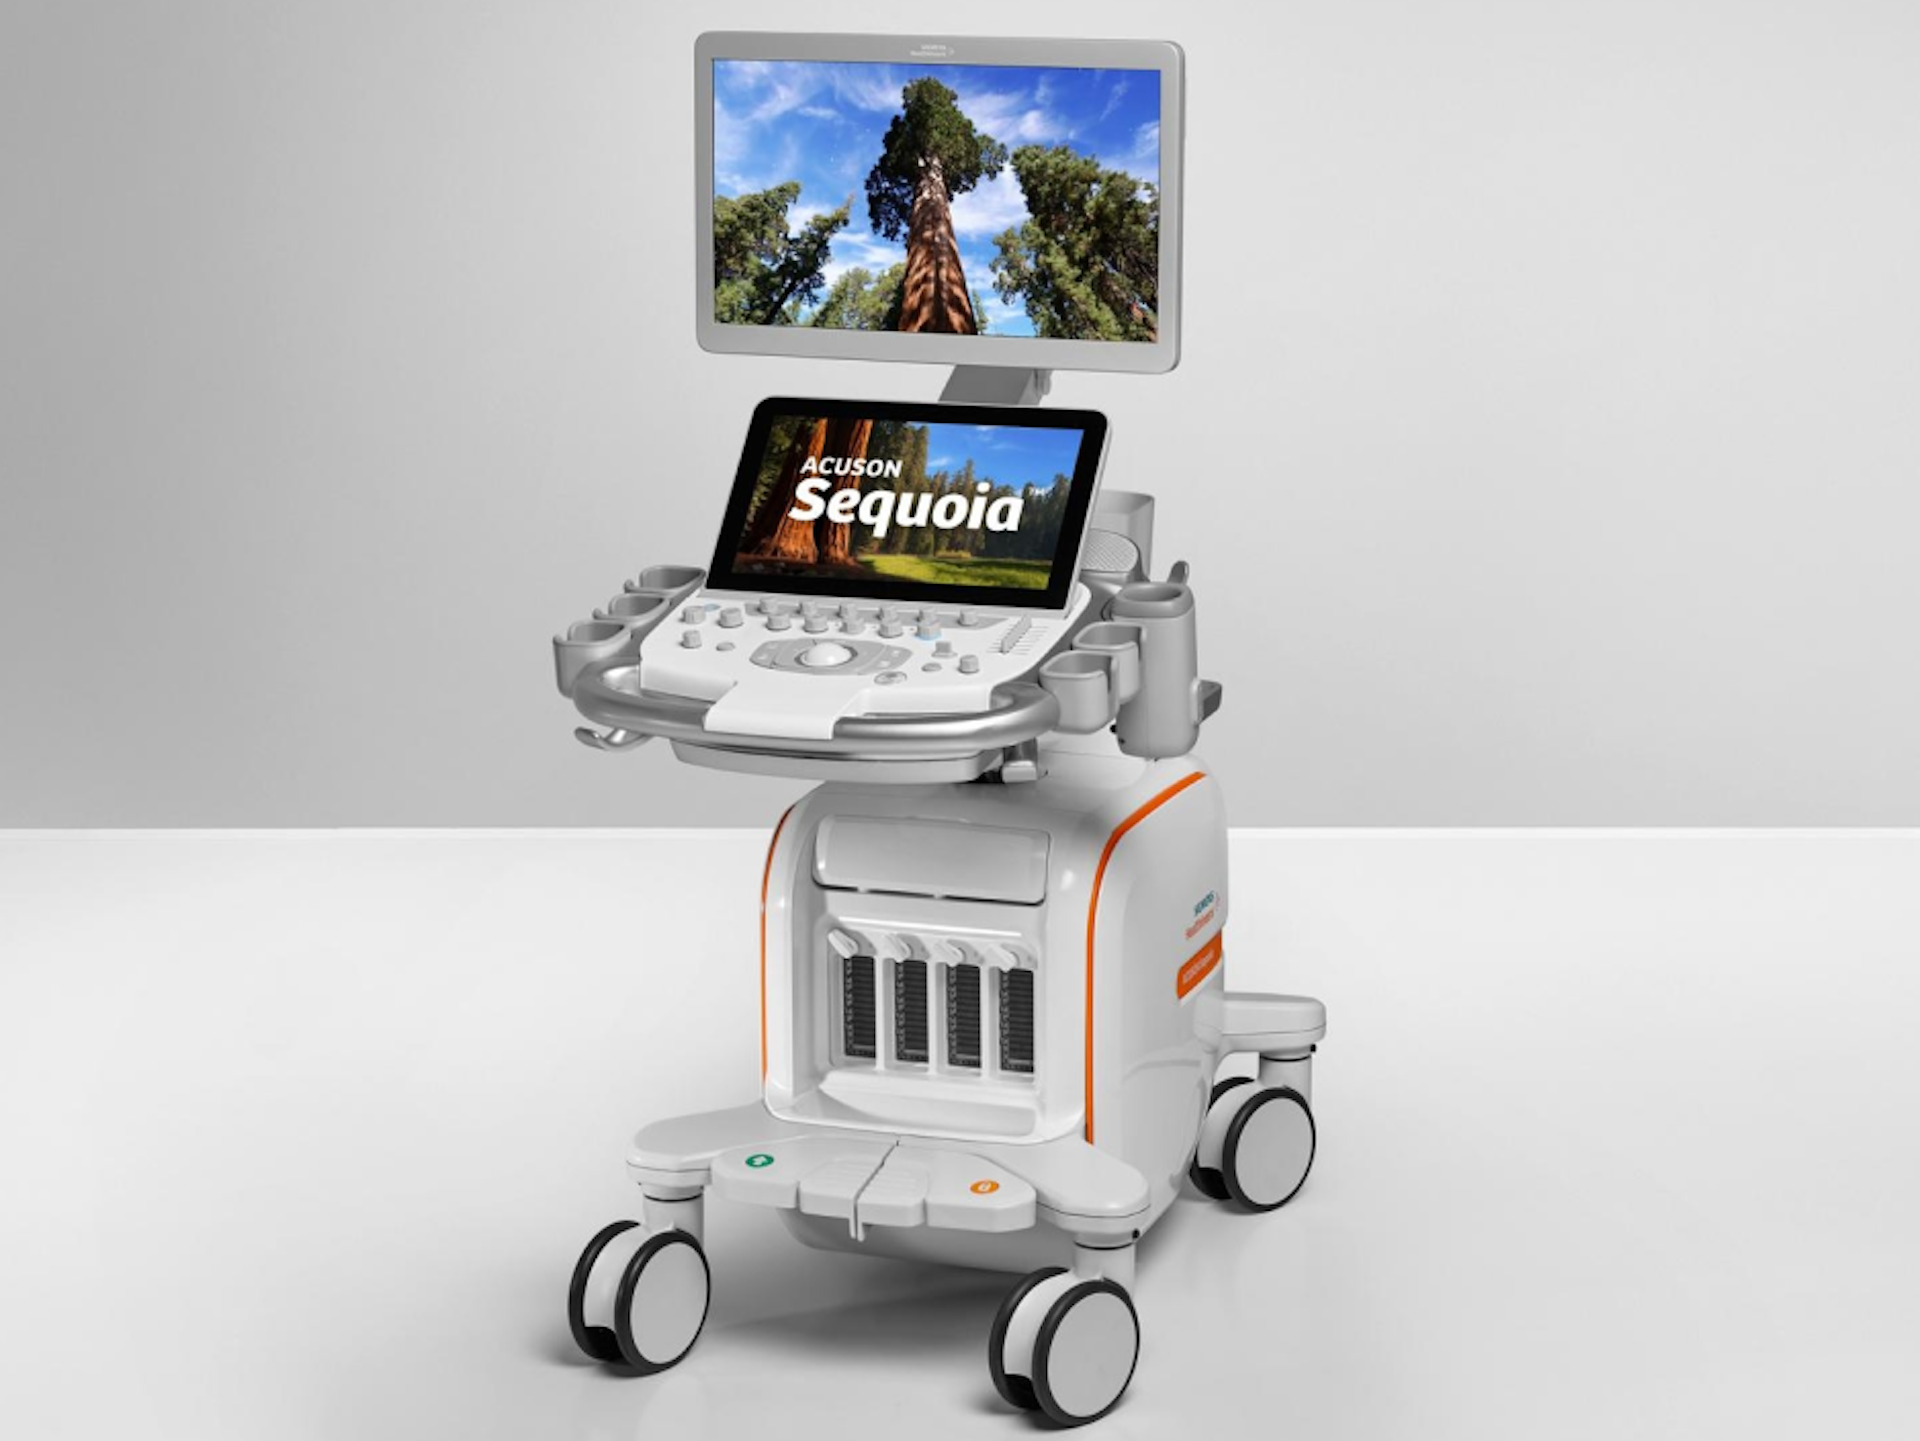 Acuson Sequoia Ultrasound Machine